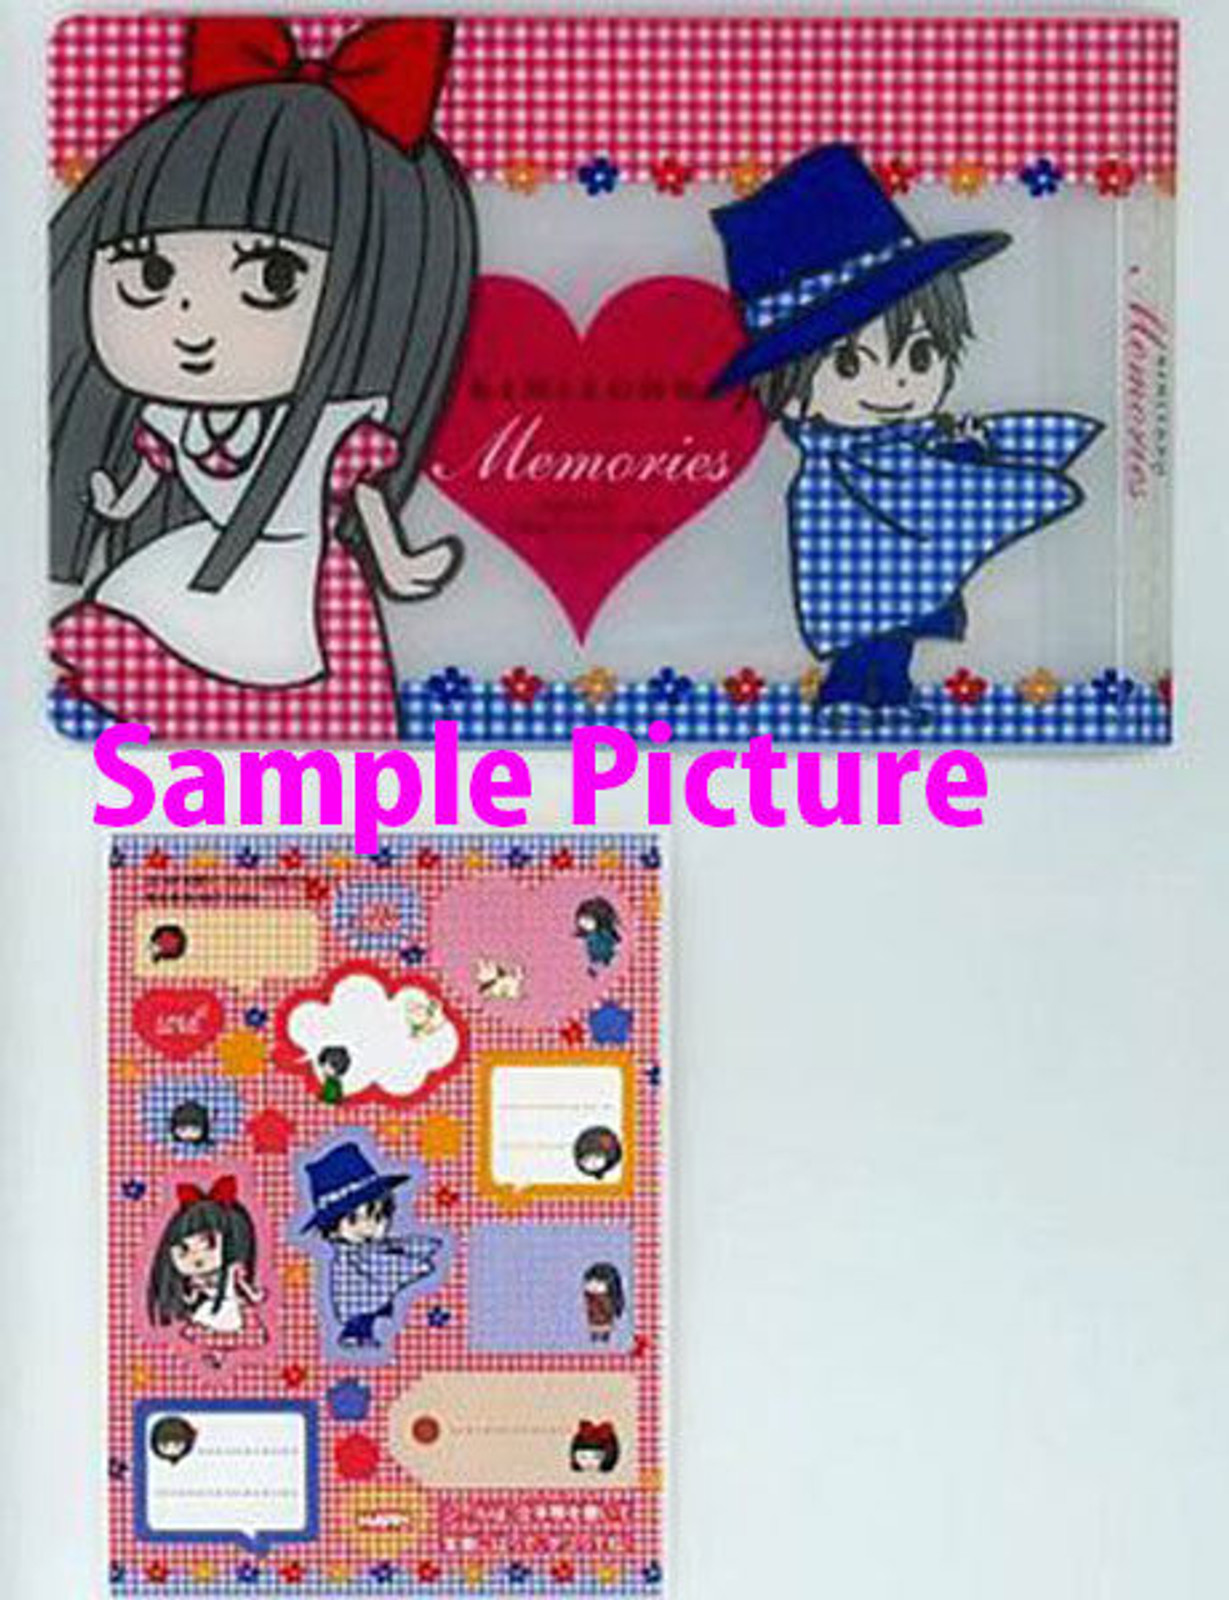 Kimi ni Todoke Photo Album & Stickers Set Margaret Magazine Limited JAPAN ANIME